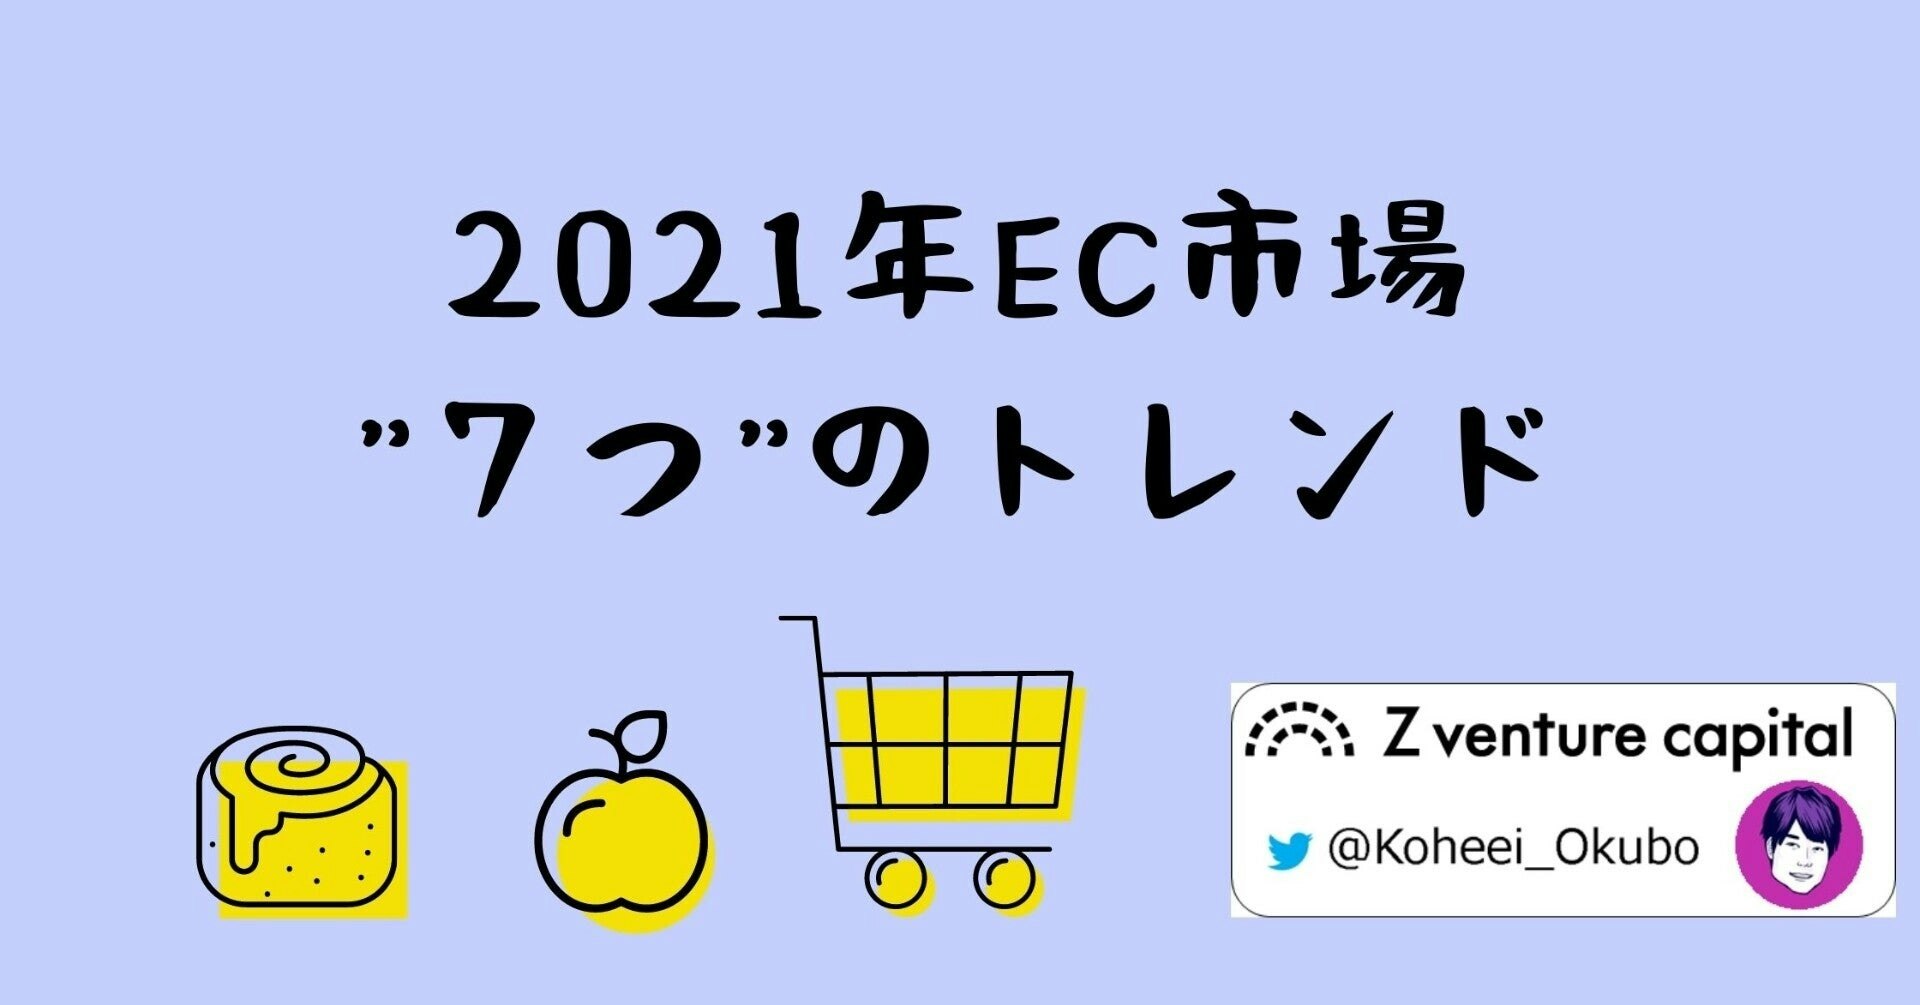 【コマースチャンネル】2021年EC市場"7つ”のトレンド